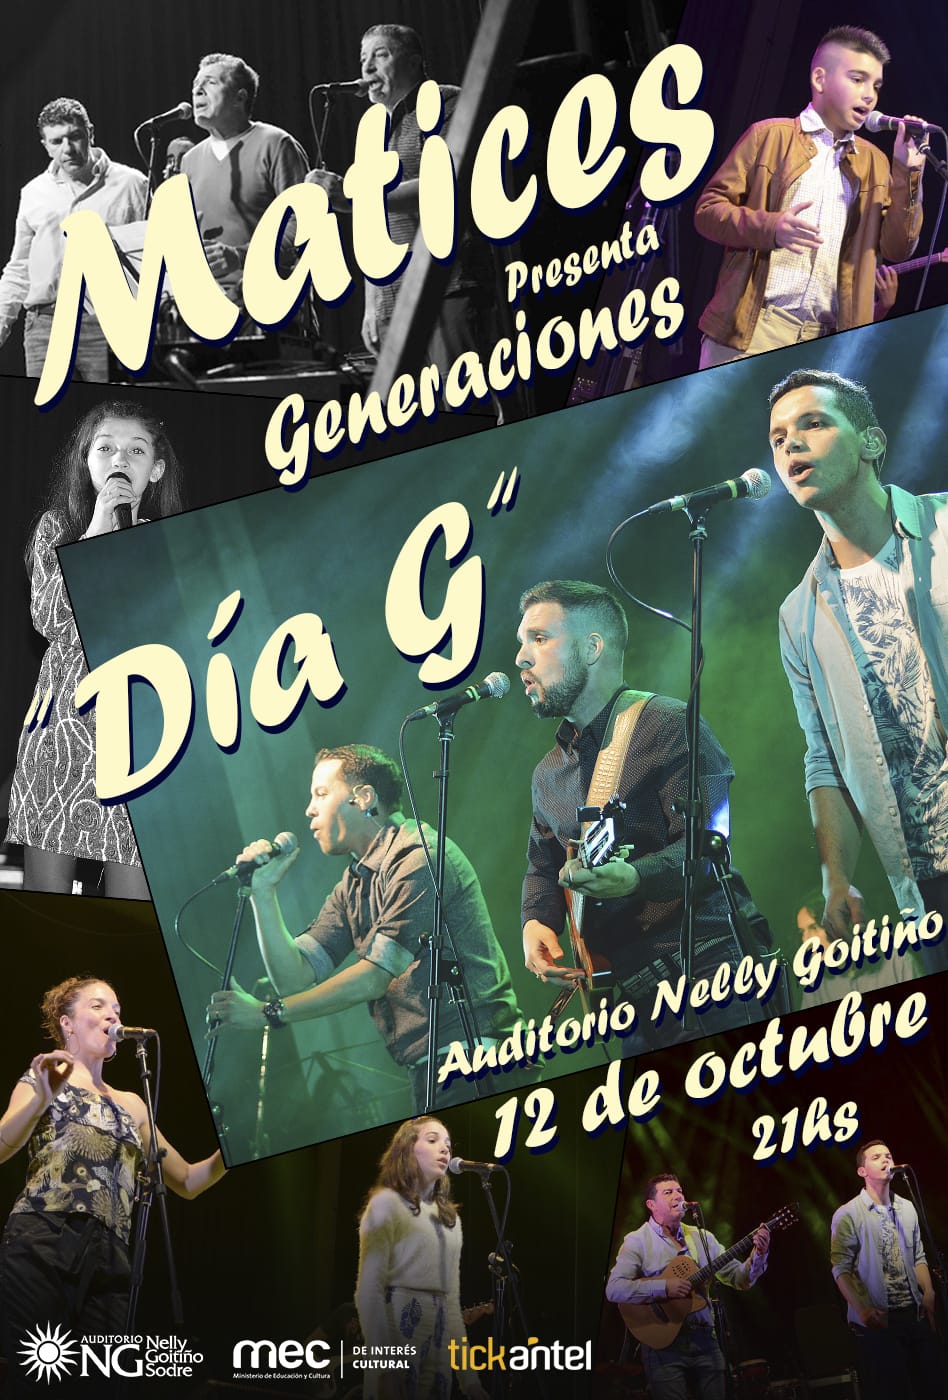 Generaciones - Auditorio Nelly Goitiño